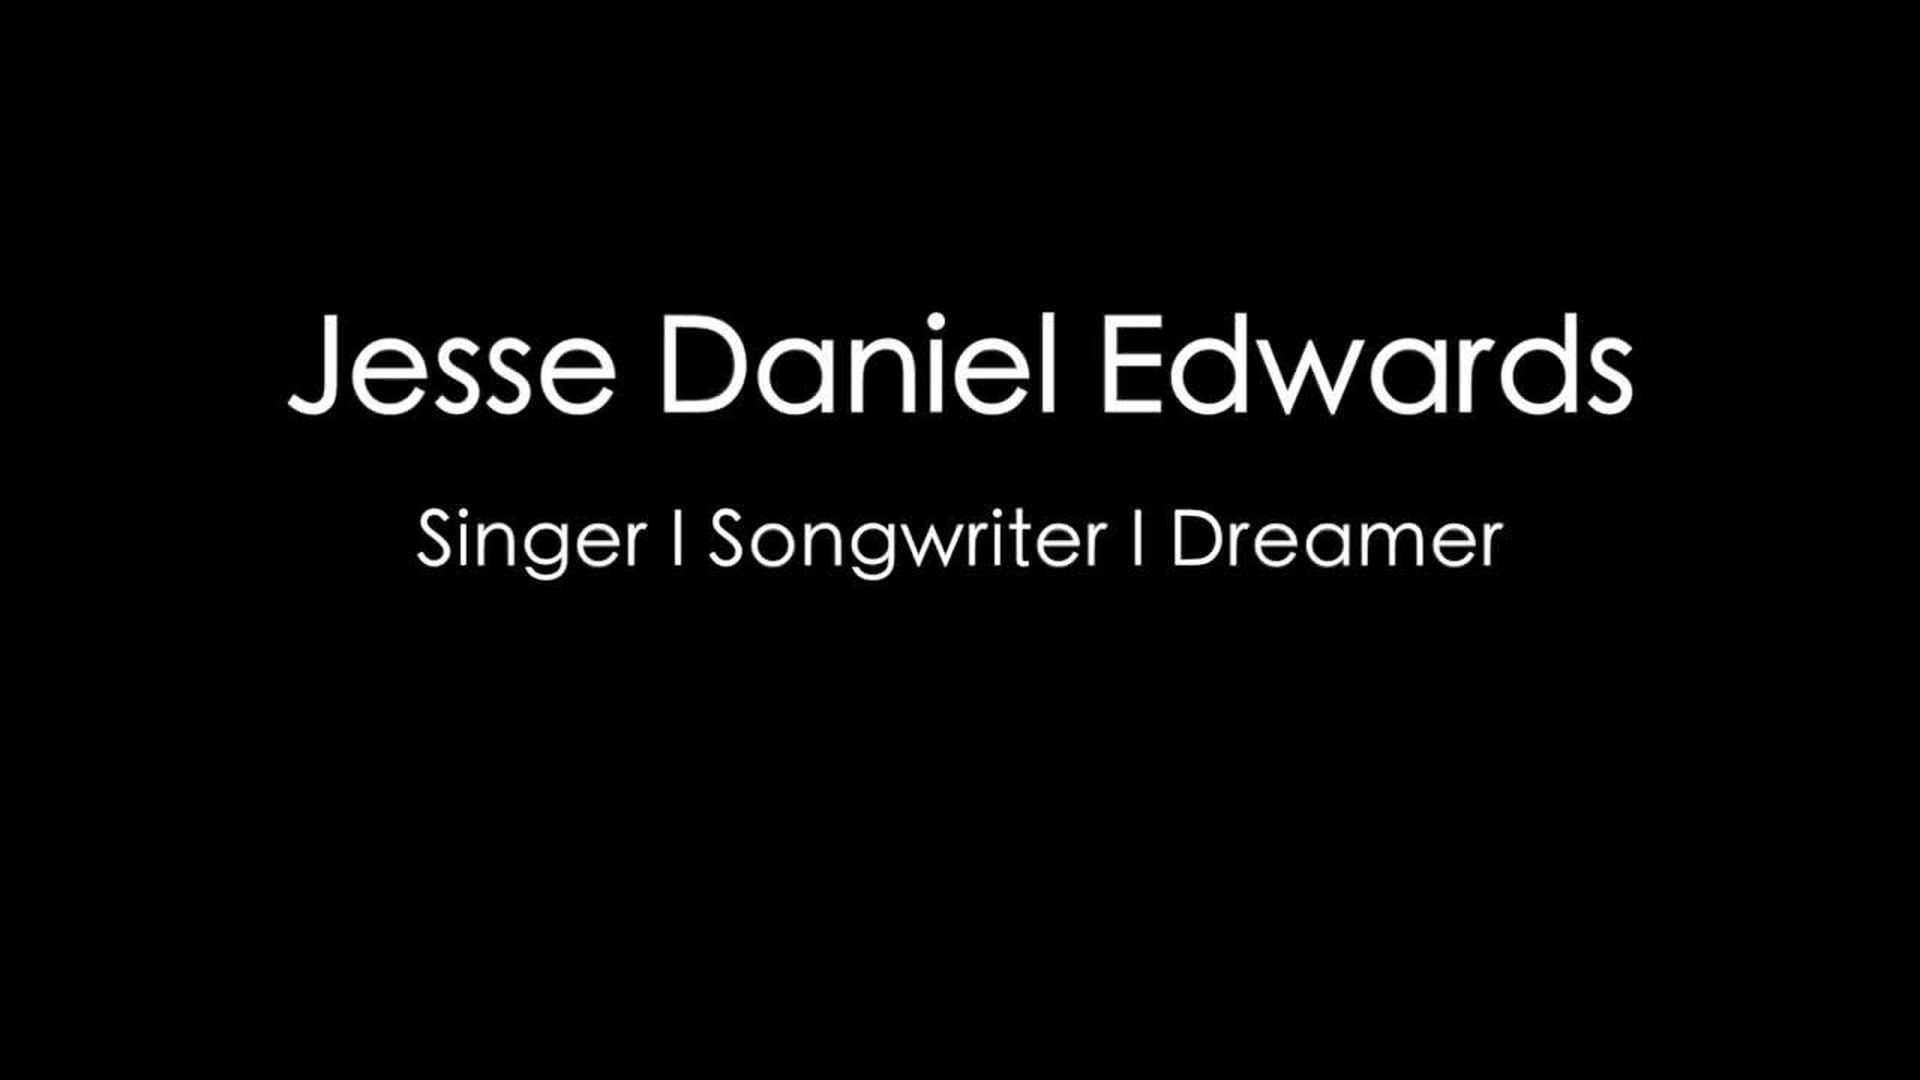 Jesse Daniel Edwards 